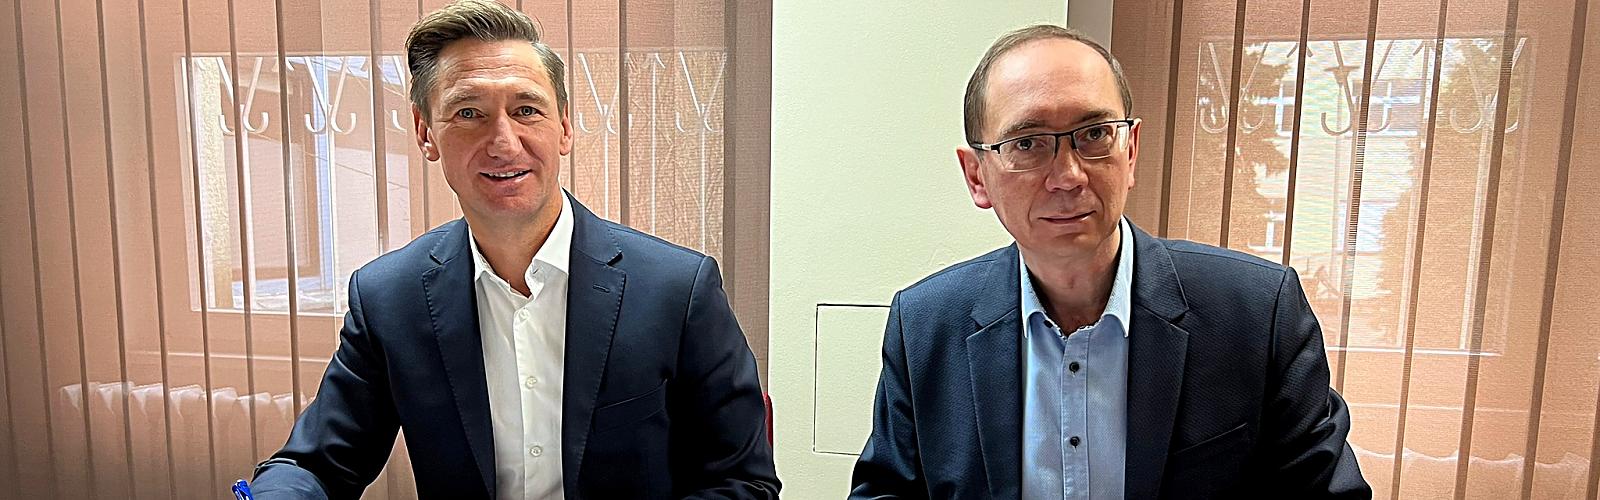 Marszałek województwa Olgierd Geblewicz (z lewej) oraz dyrektor placówki Łukasz Tyszler podpisali umowę gwarantującą 13 mln zł dla Szpitala „Zdroje”